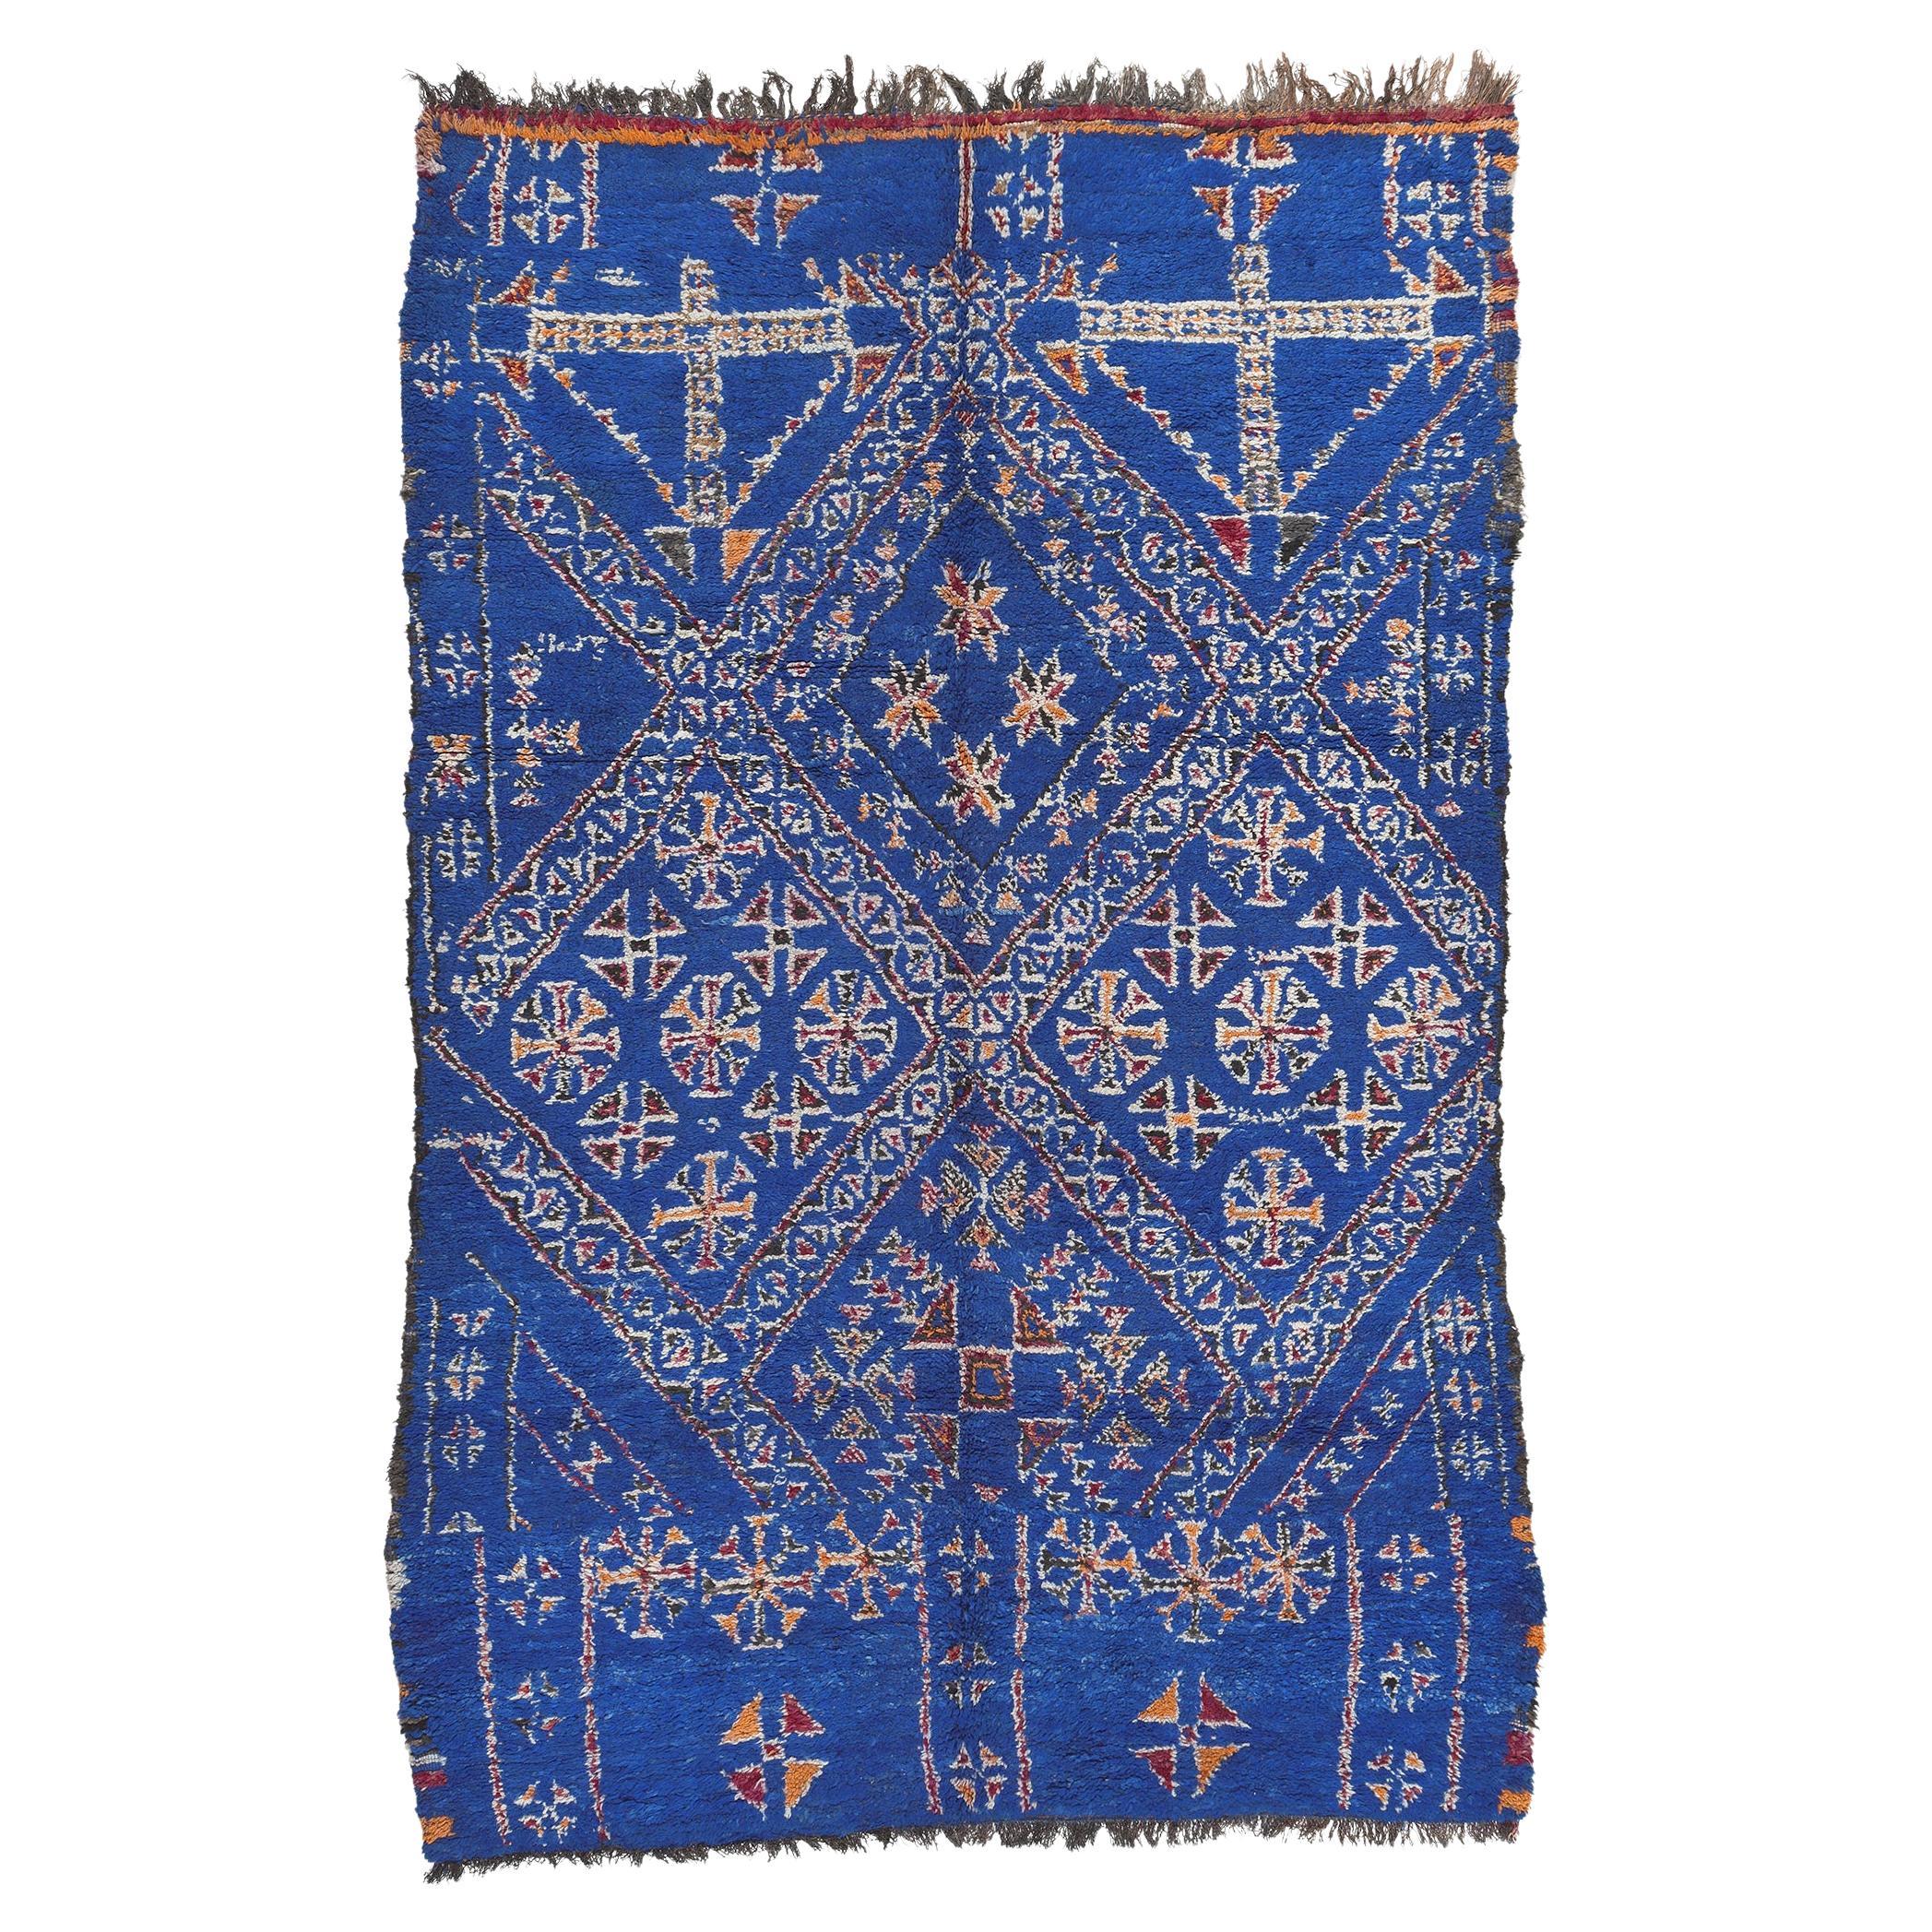 Marokkanischer blauer Beni MGuild-Teppich im Vintage-Stil, Stammeskunst-Enchantment Meets Cozy Nomad